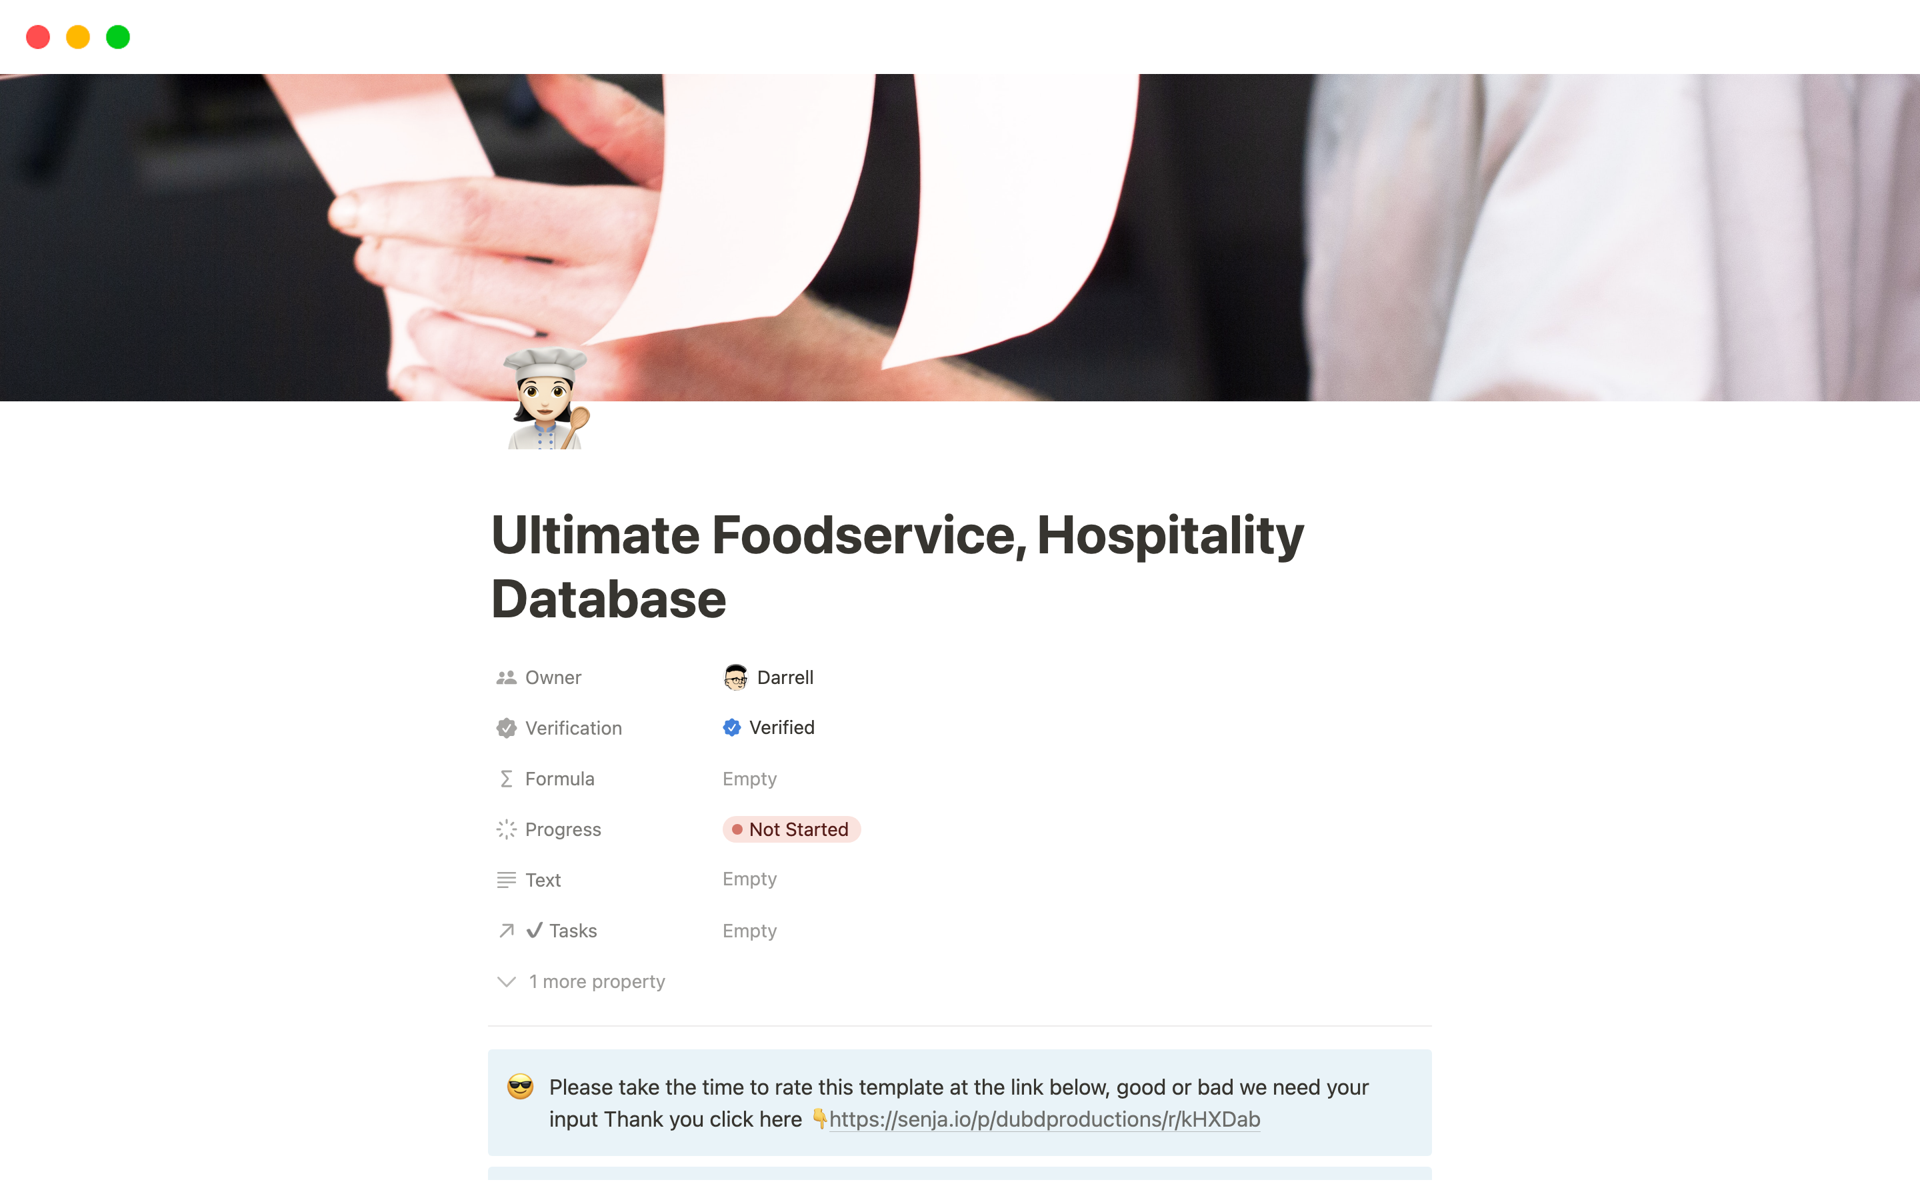 Uma prévia do modelo para Ultimate Foodservice, Hospitality Database